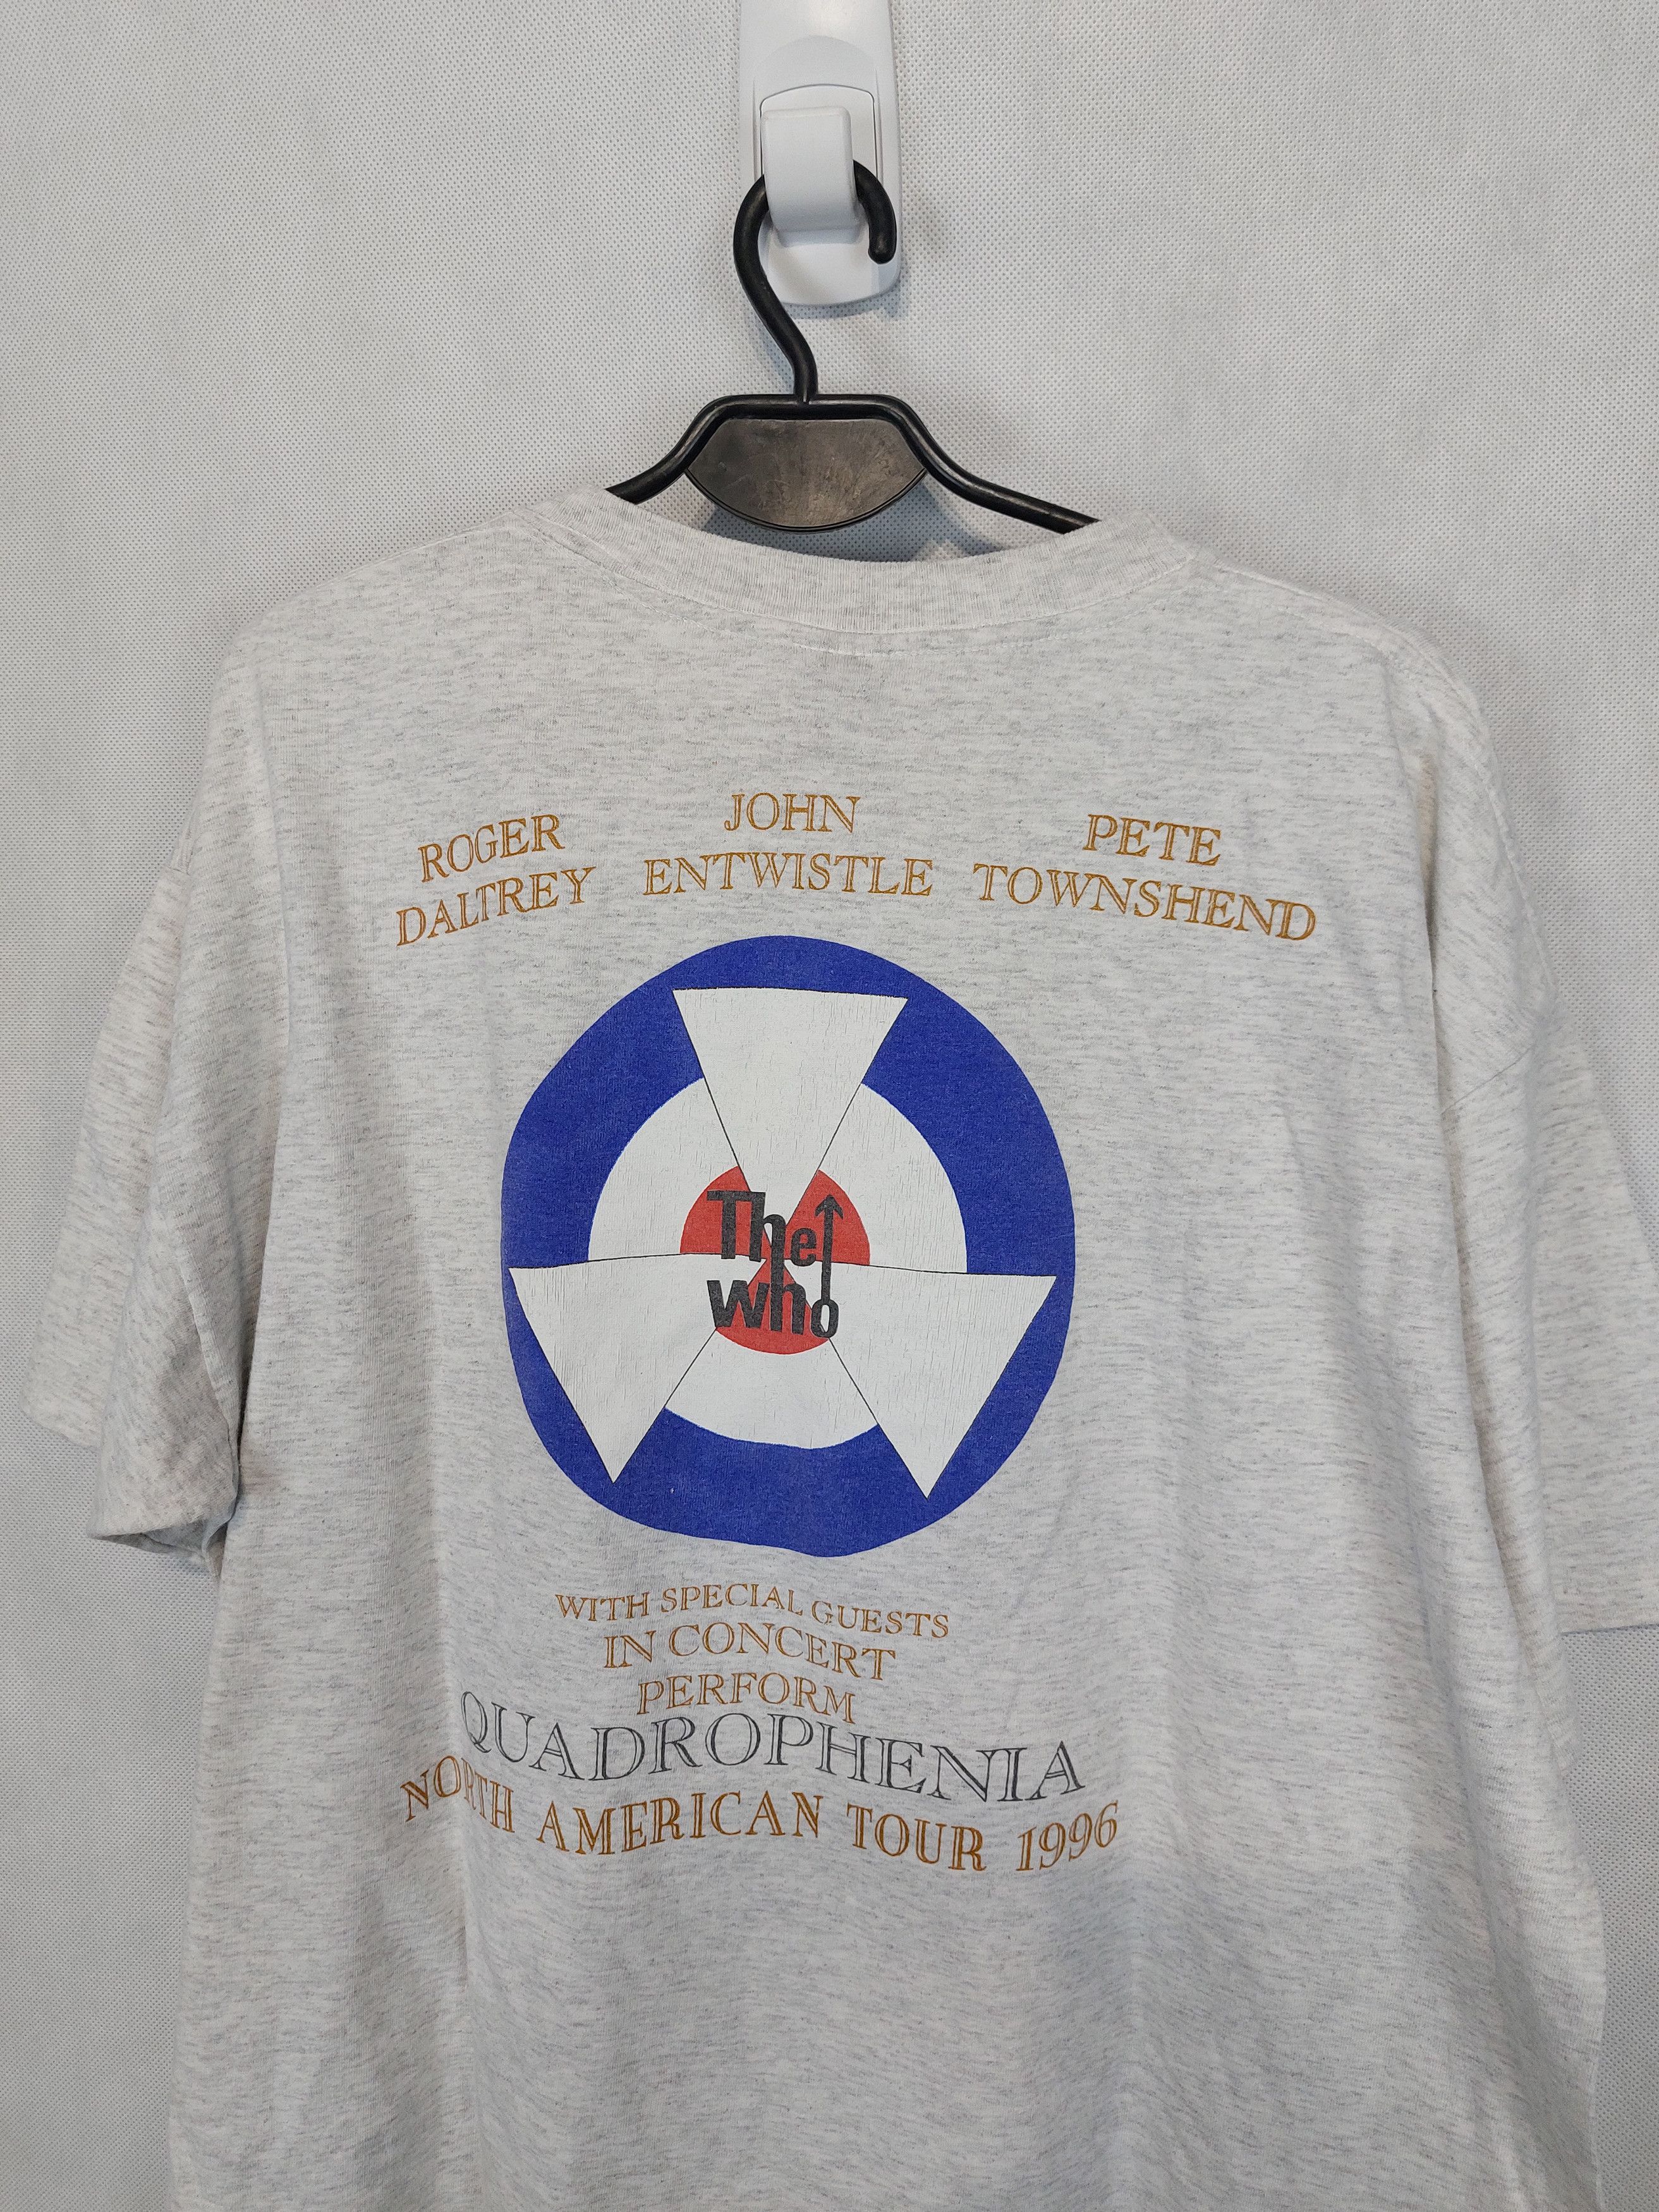 Vintage The Who vintage 1996 Quadrophenia tshirt Size US XL / EU 56 / 4 - 2 Preview